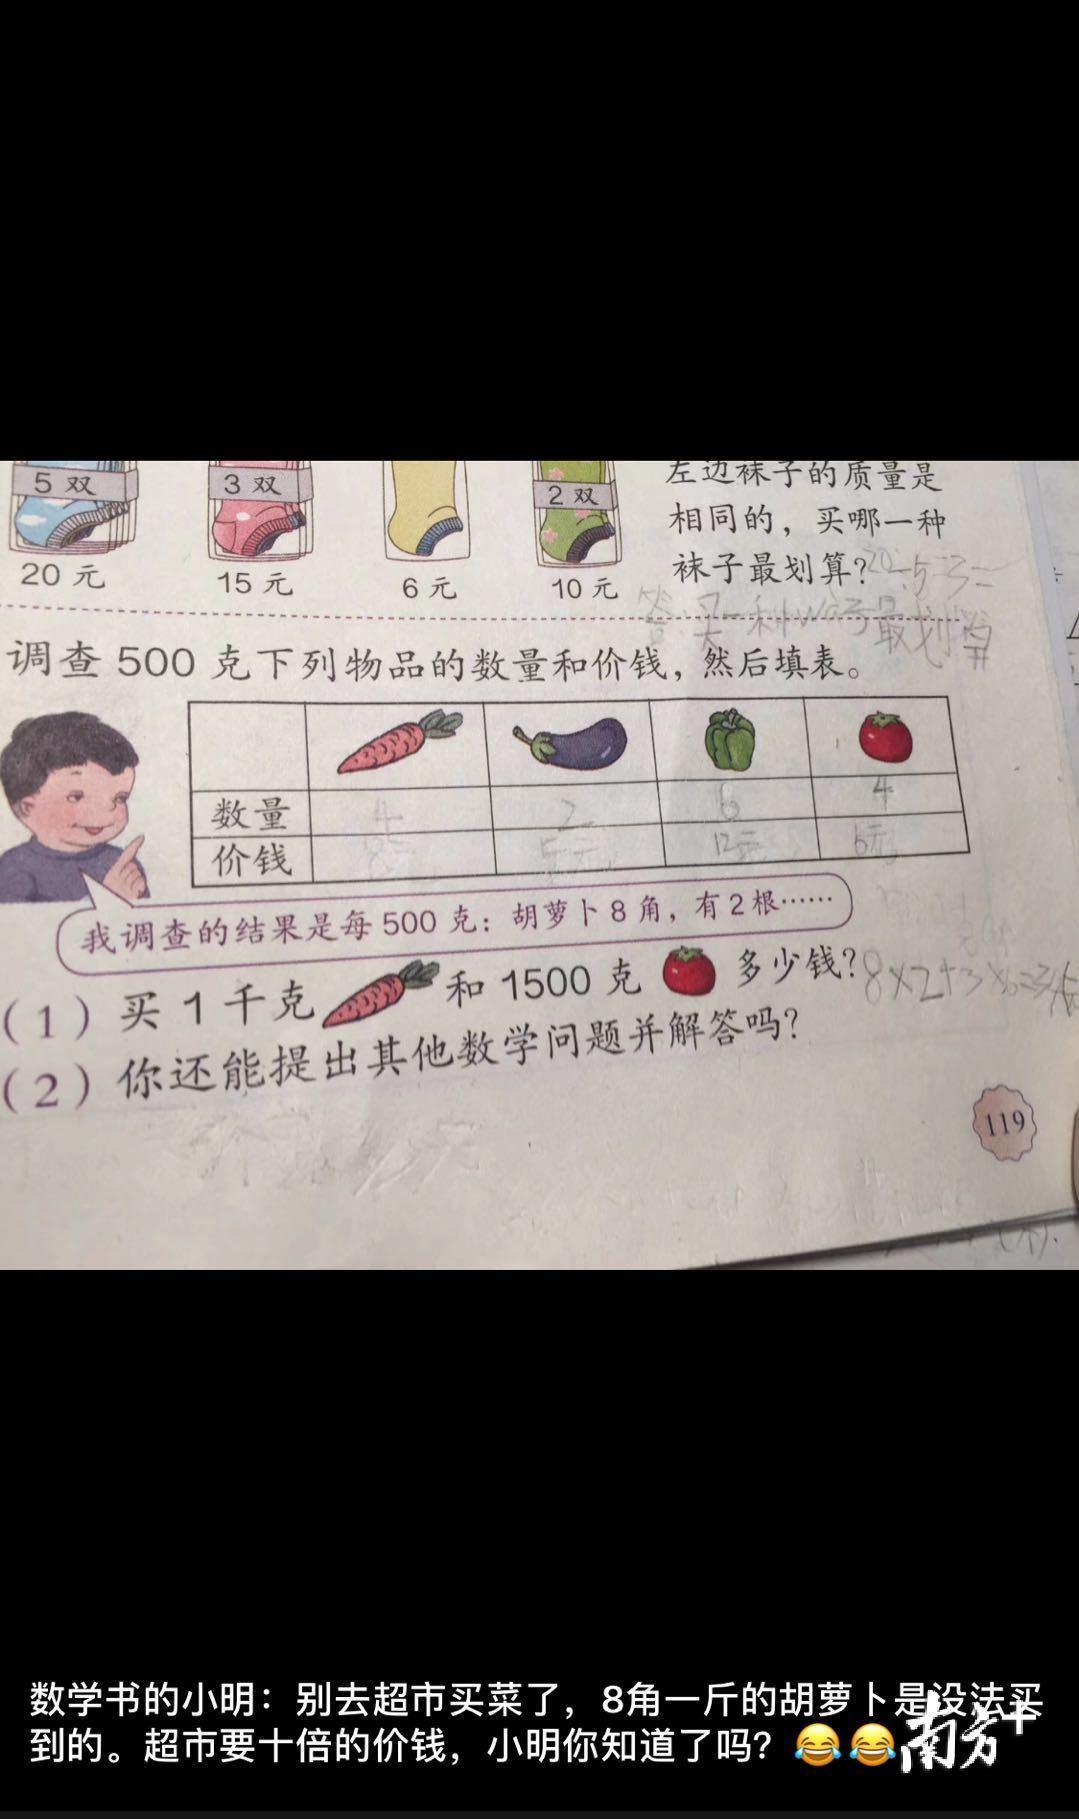 原来课本上有一道数学题,让孩子填各种蔬菜的数量以及价格,叶女士灵机